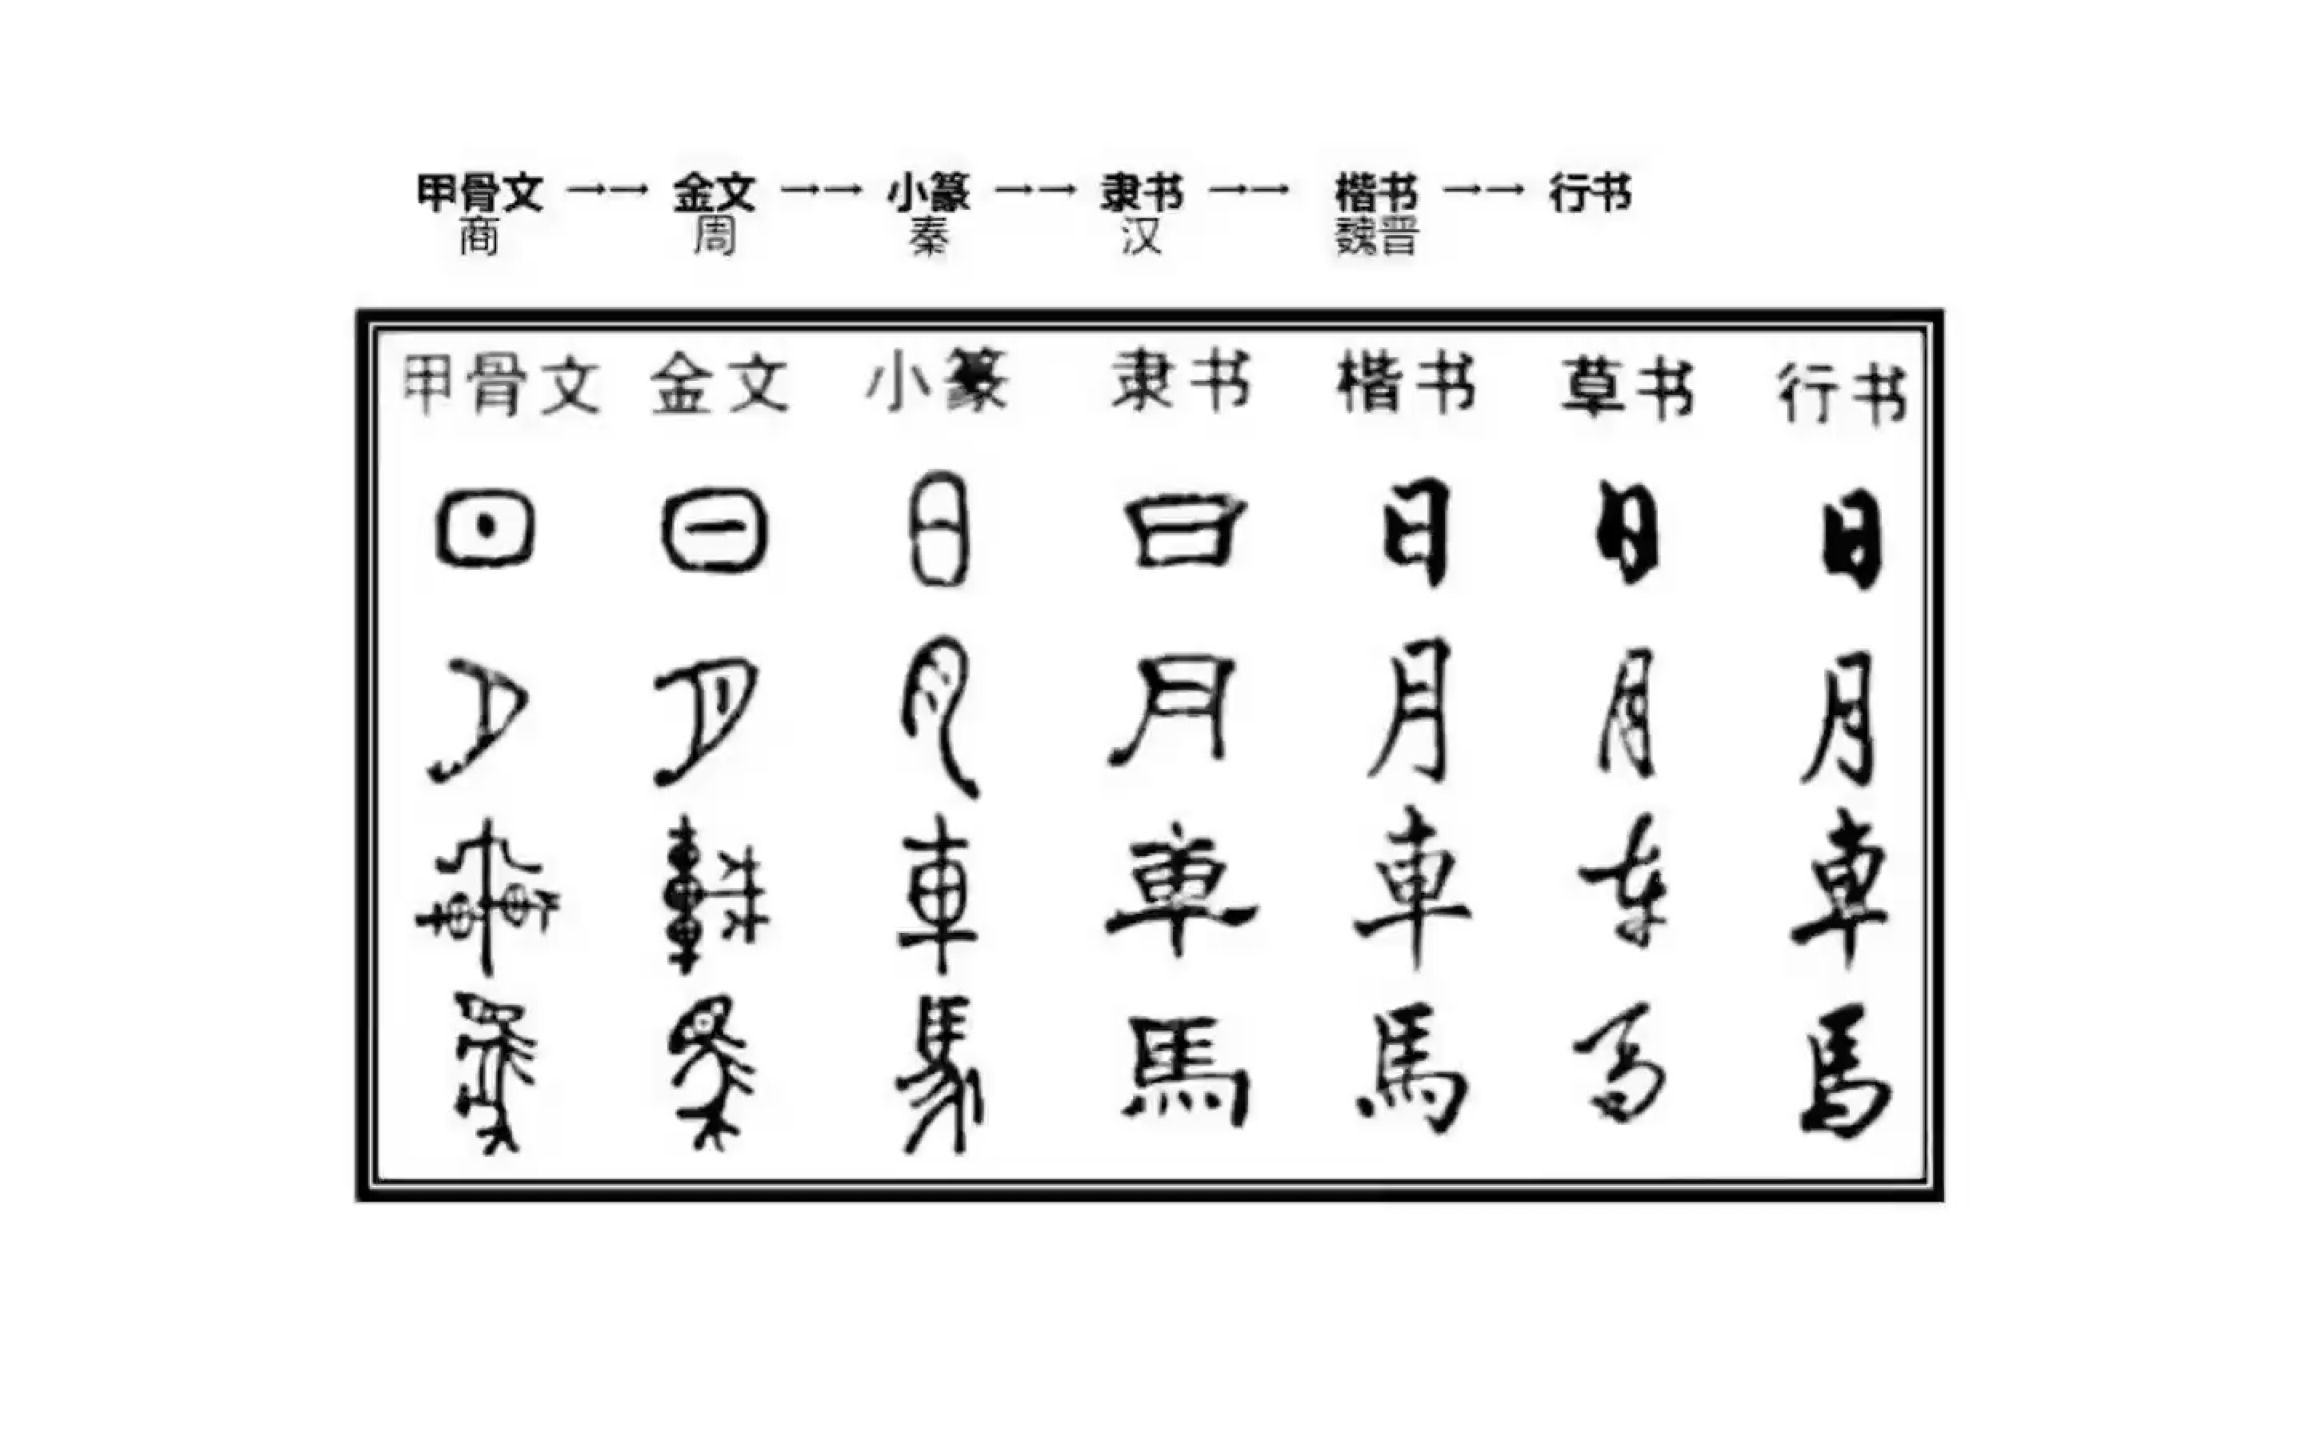 中国历史字体演变过程图片